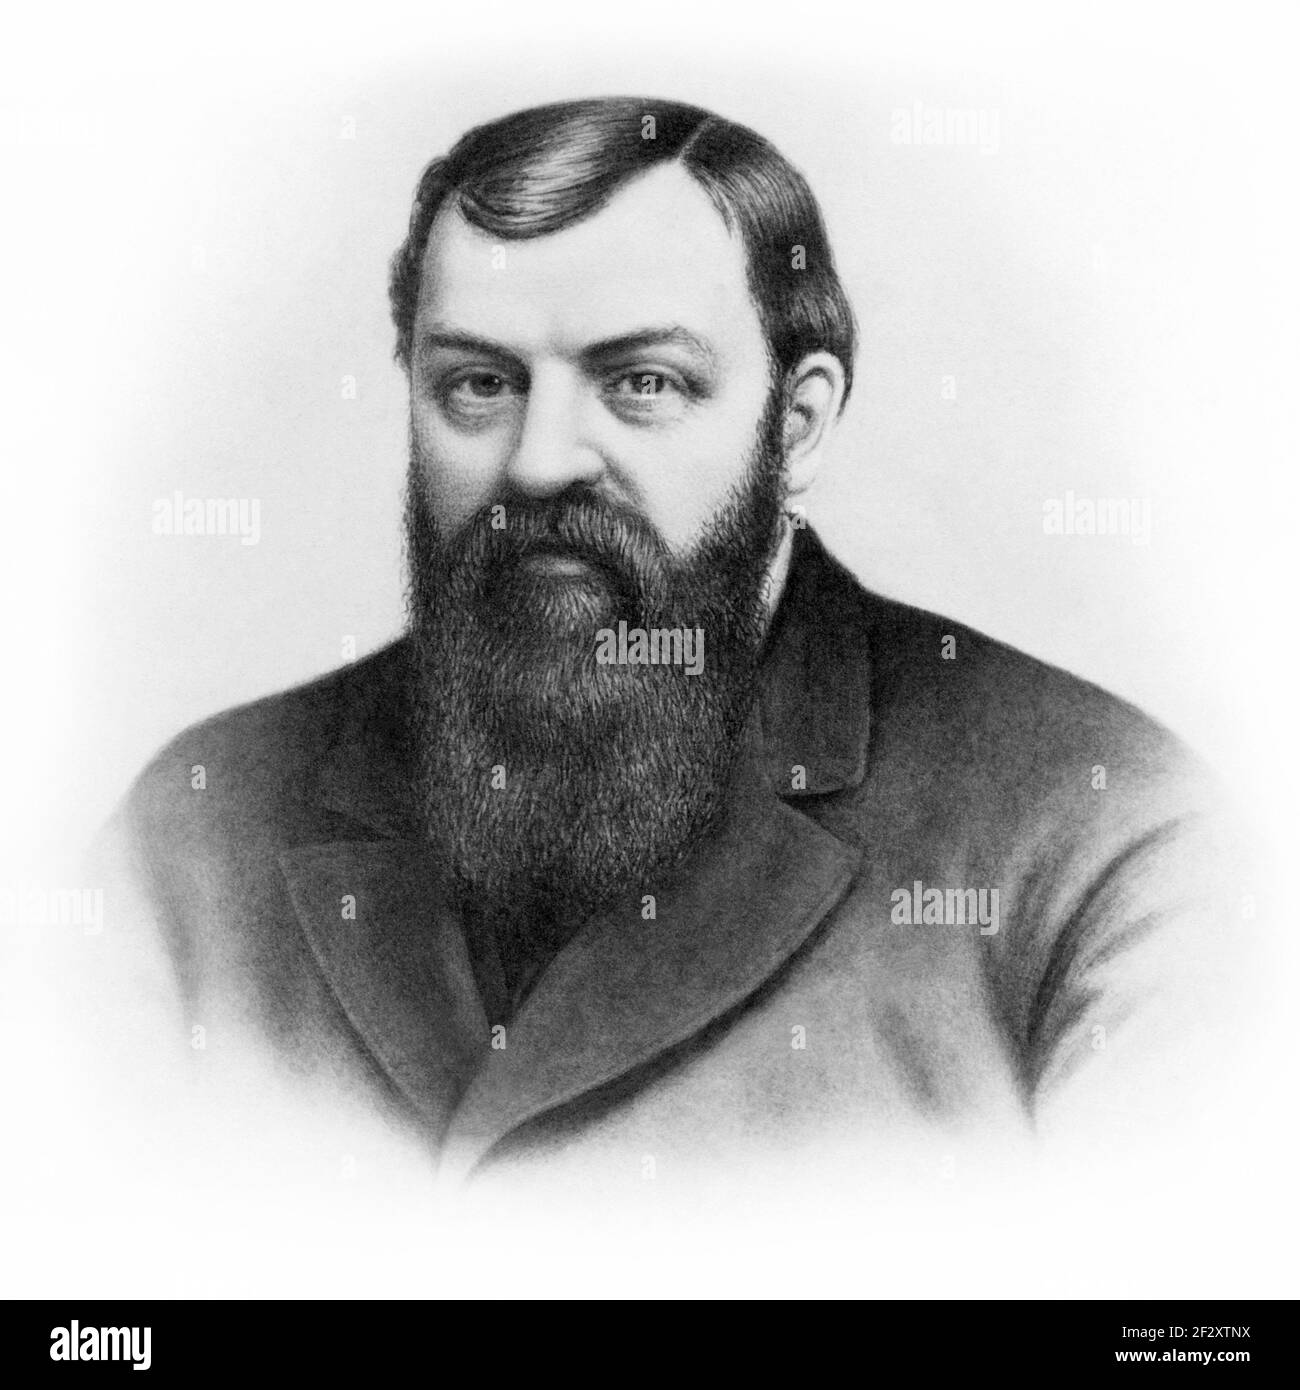 Dwight Lyman Moody (1837-1899), amerikanischer christlicher Evangelist, in einem Porträt von Alden Finney Brooks aus dem Jahr 1877. (USA) Stockfoto